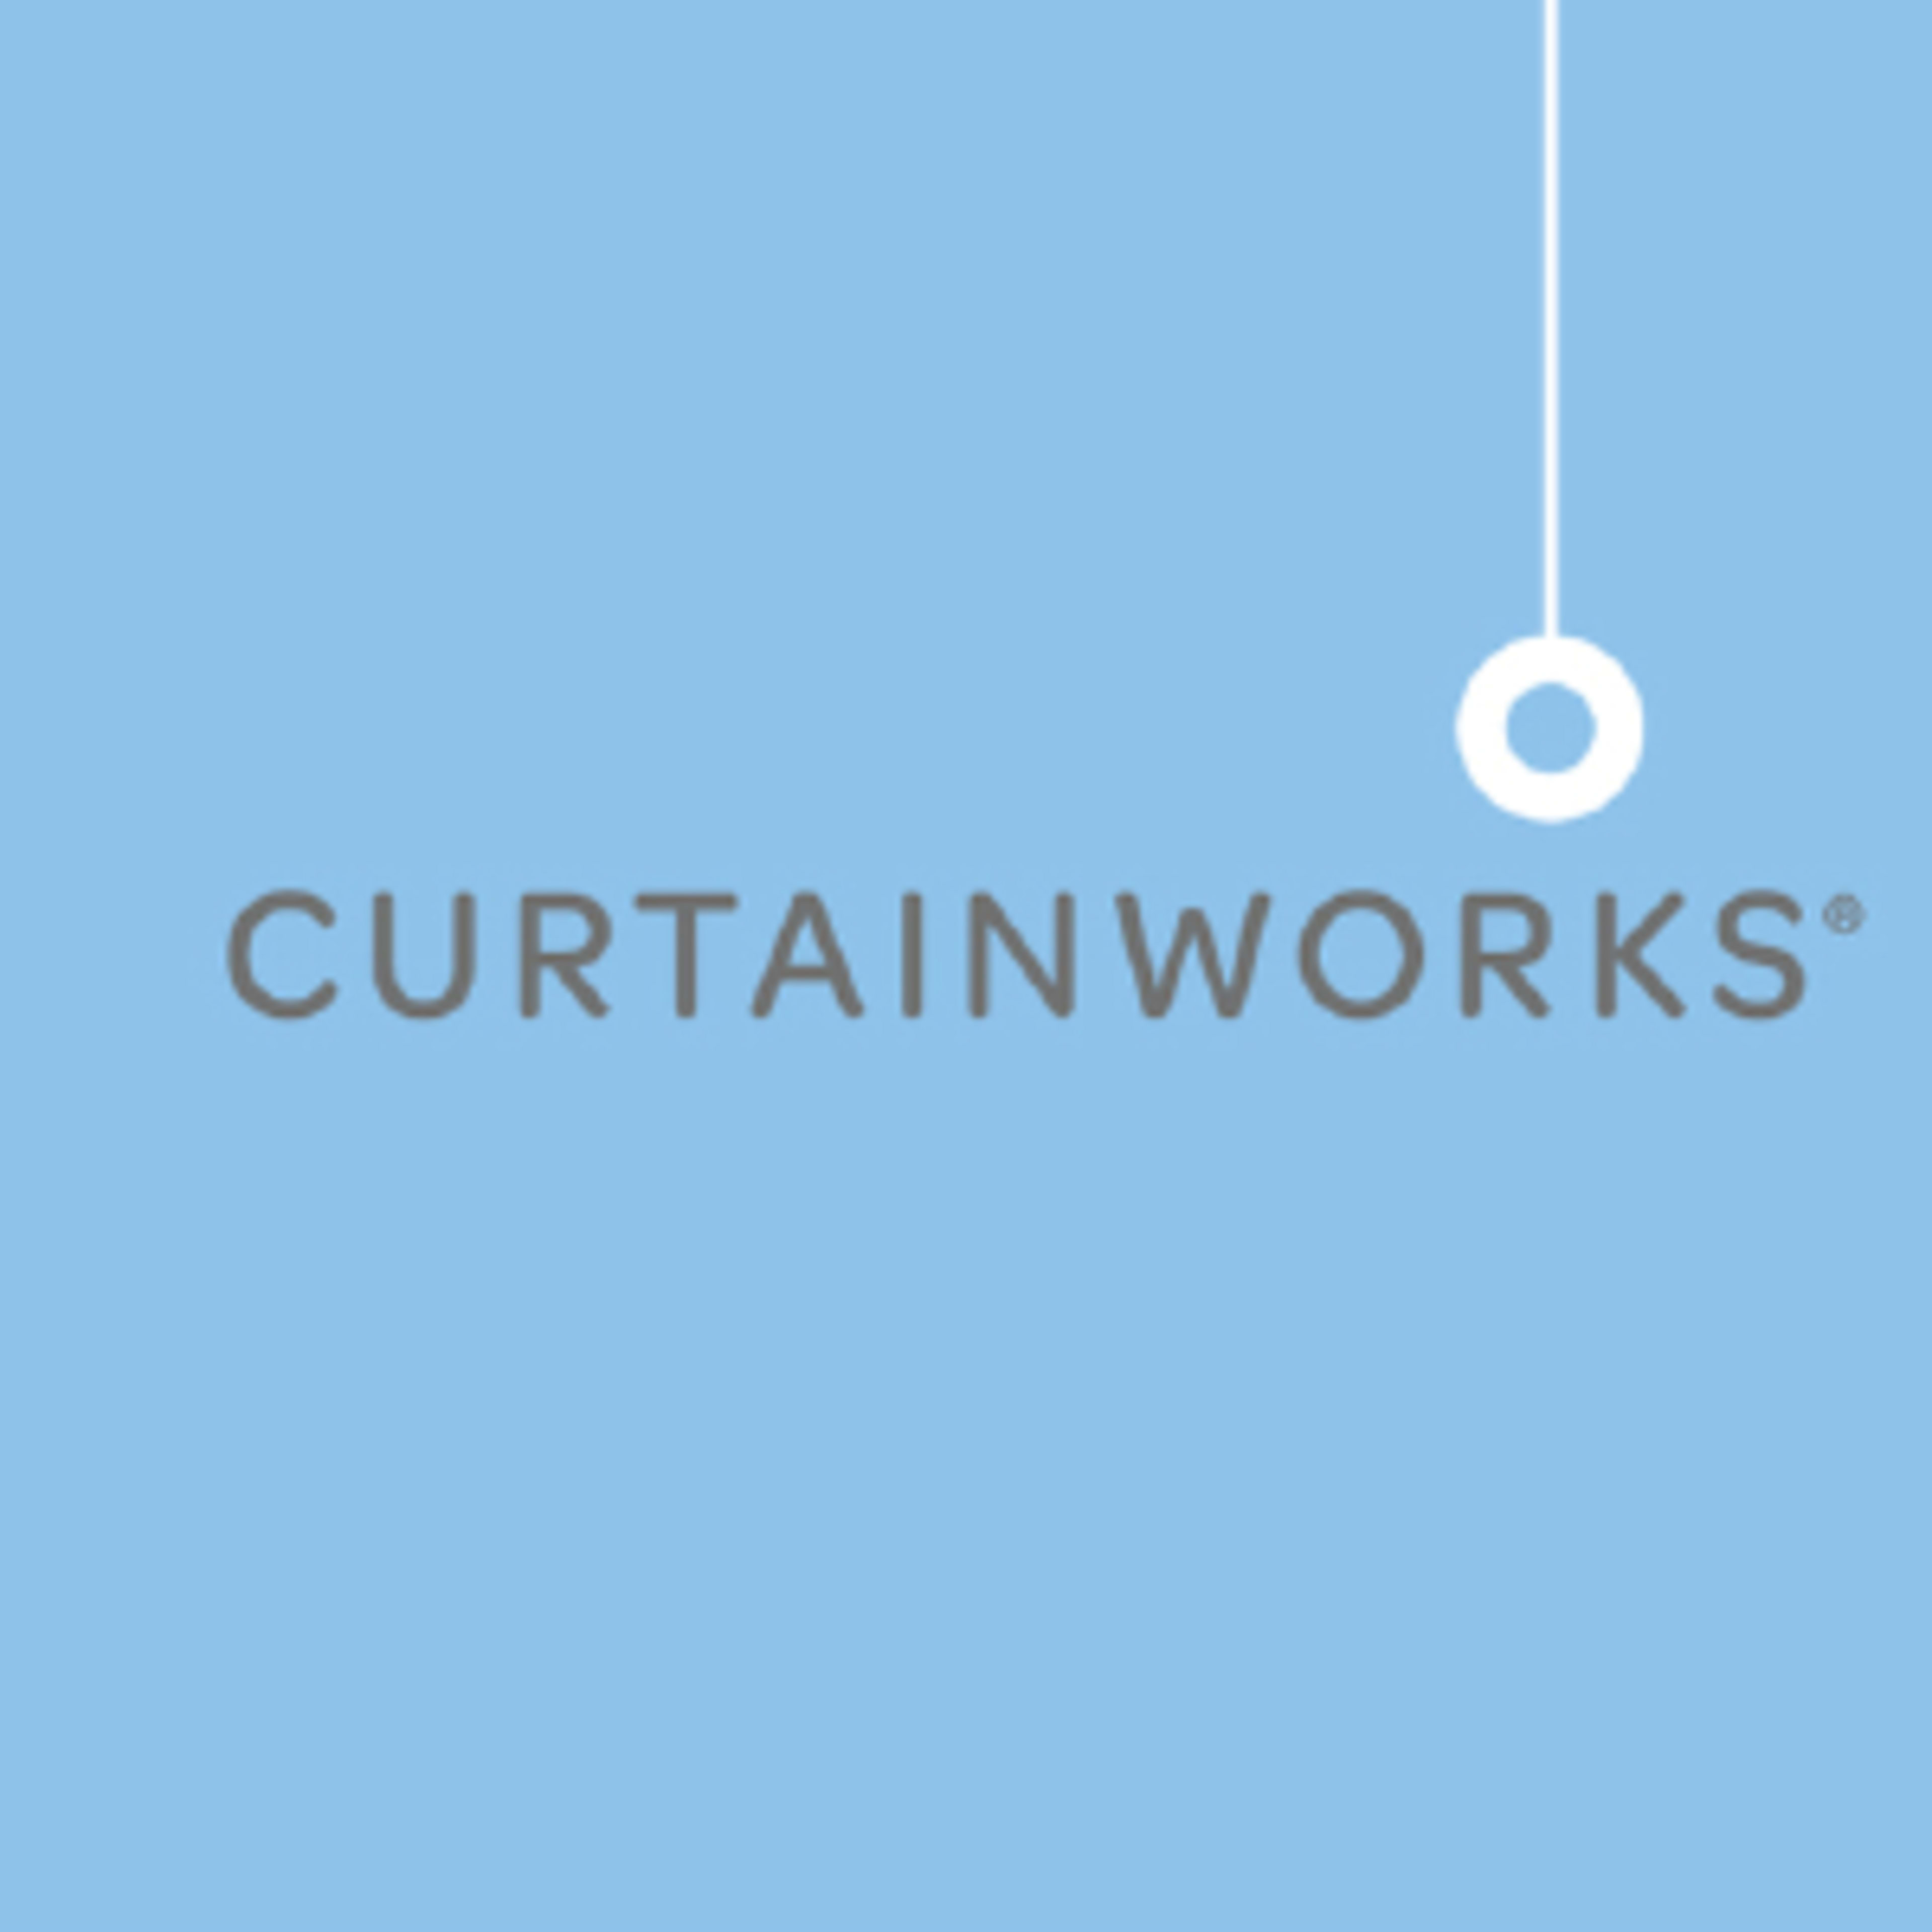 Curtainworks